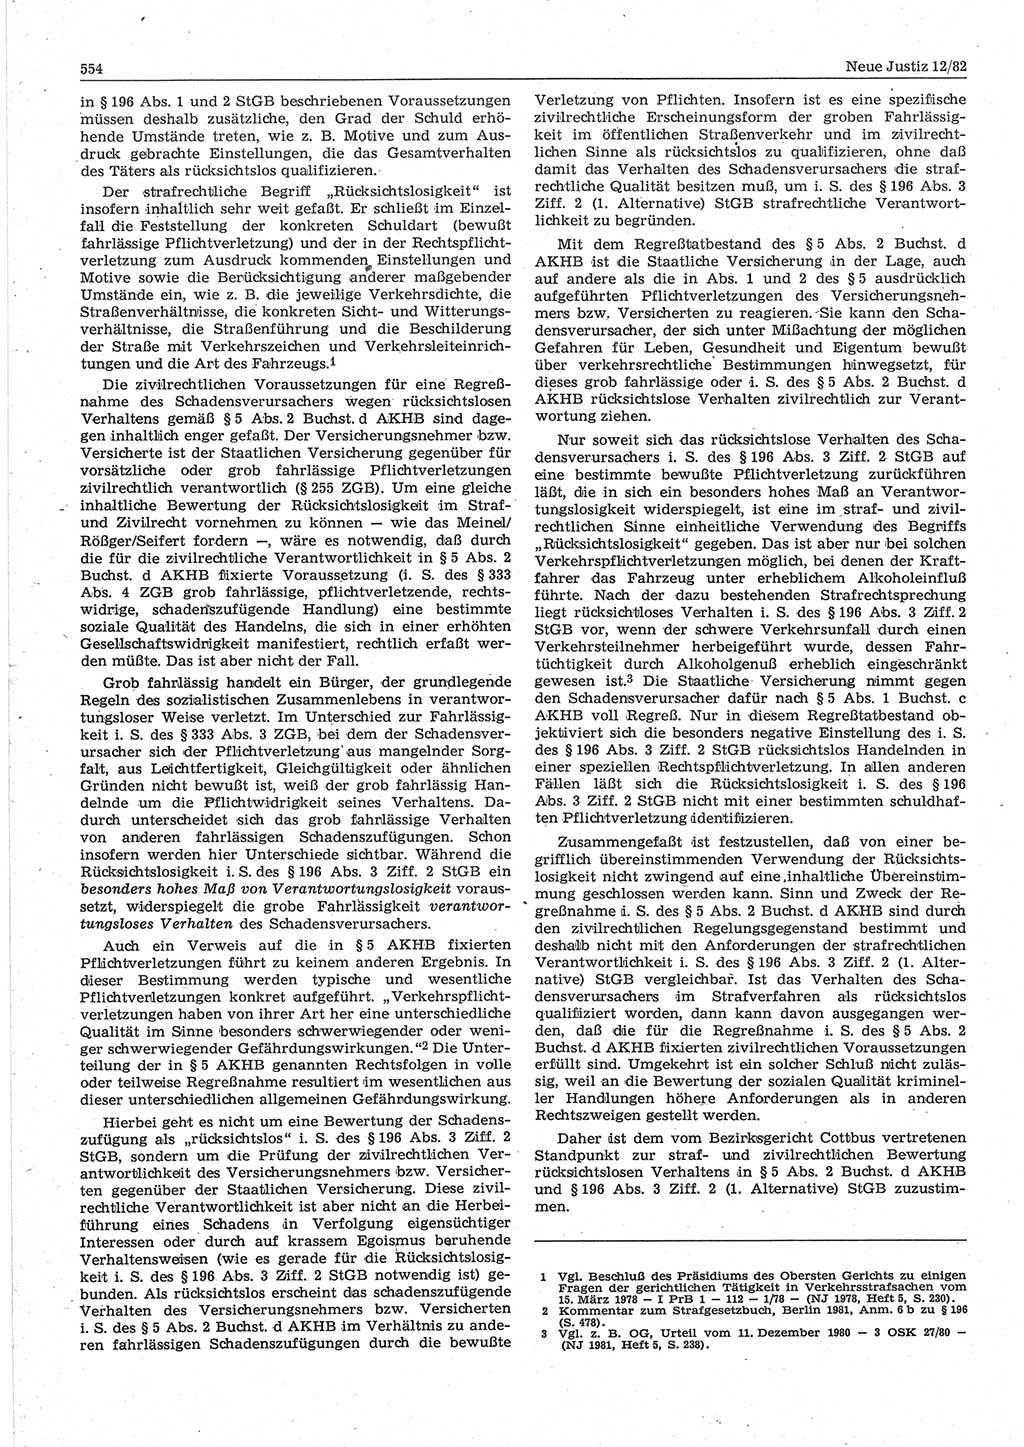 Neue Justiz (NJ), Zeitschrift für sozialistisches Recht und Gesetzlichkeit [Deutsche Demokratische Republik (DDR)], 36. Jahrgang 1982, Seite 554 (NJ DDR 1982, S. 554)